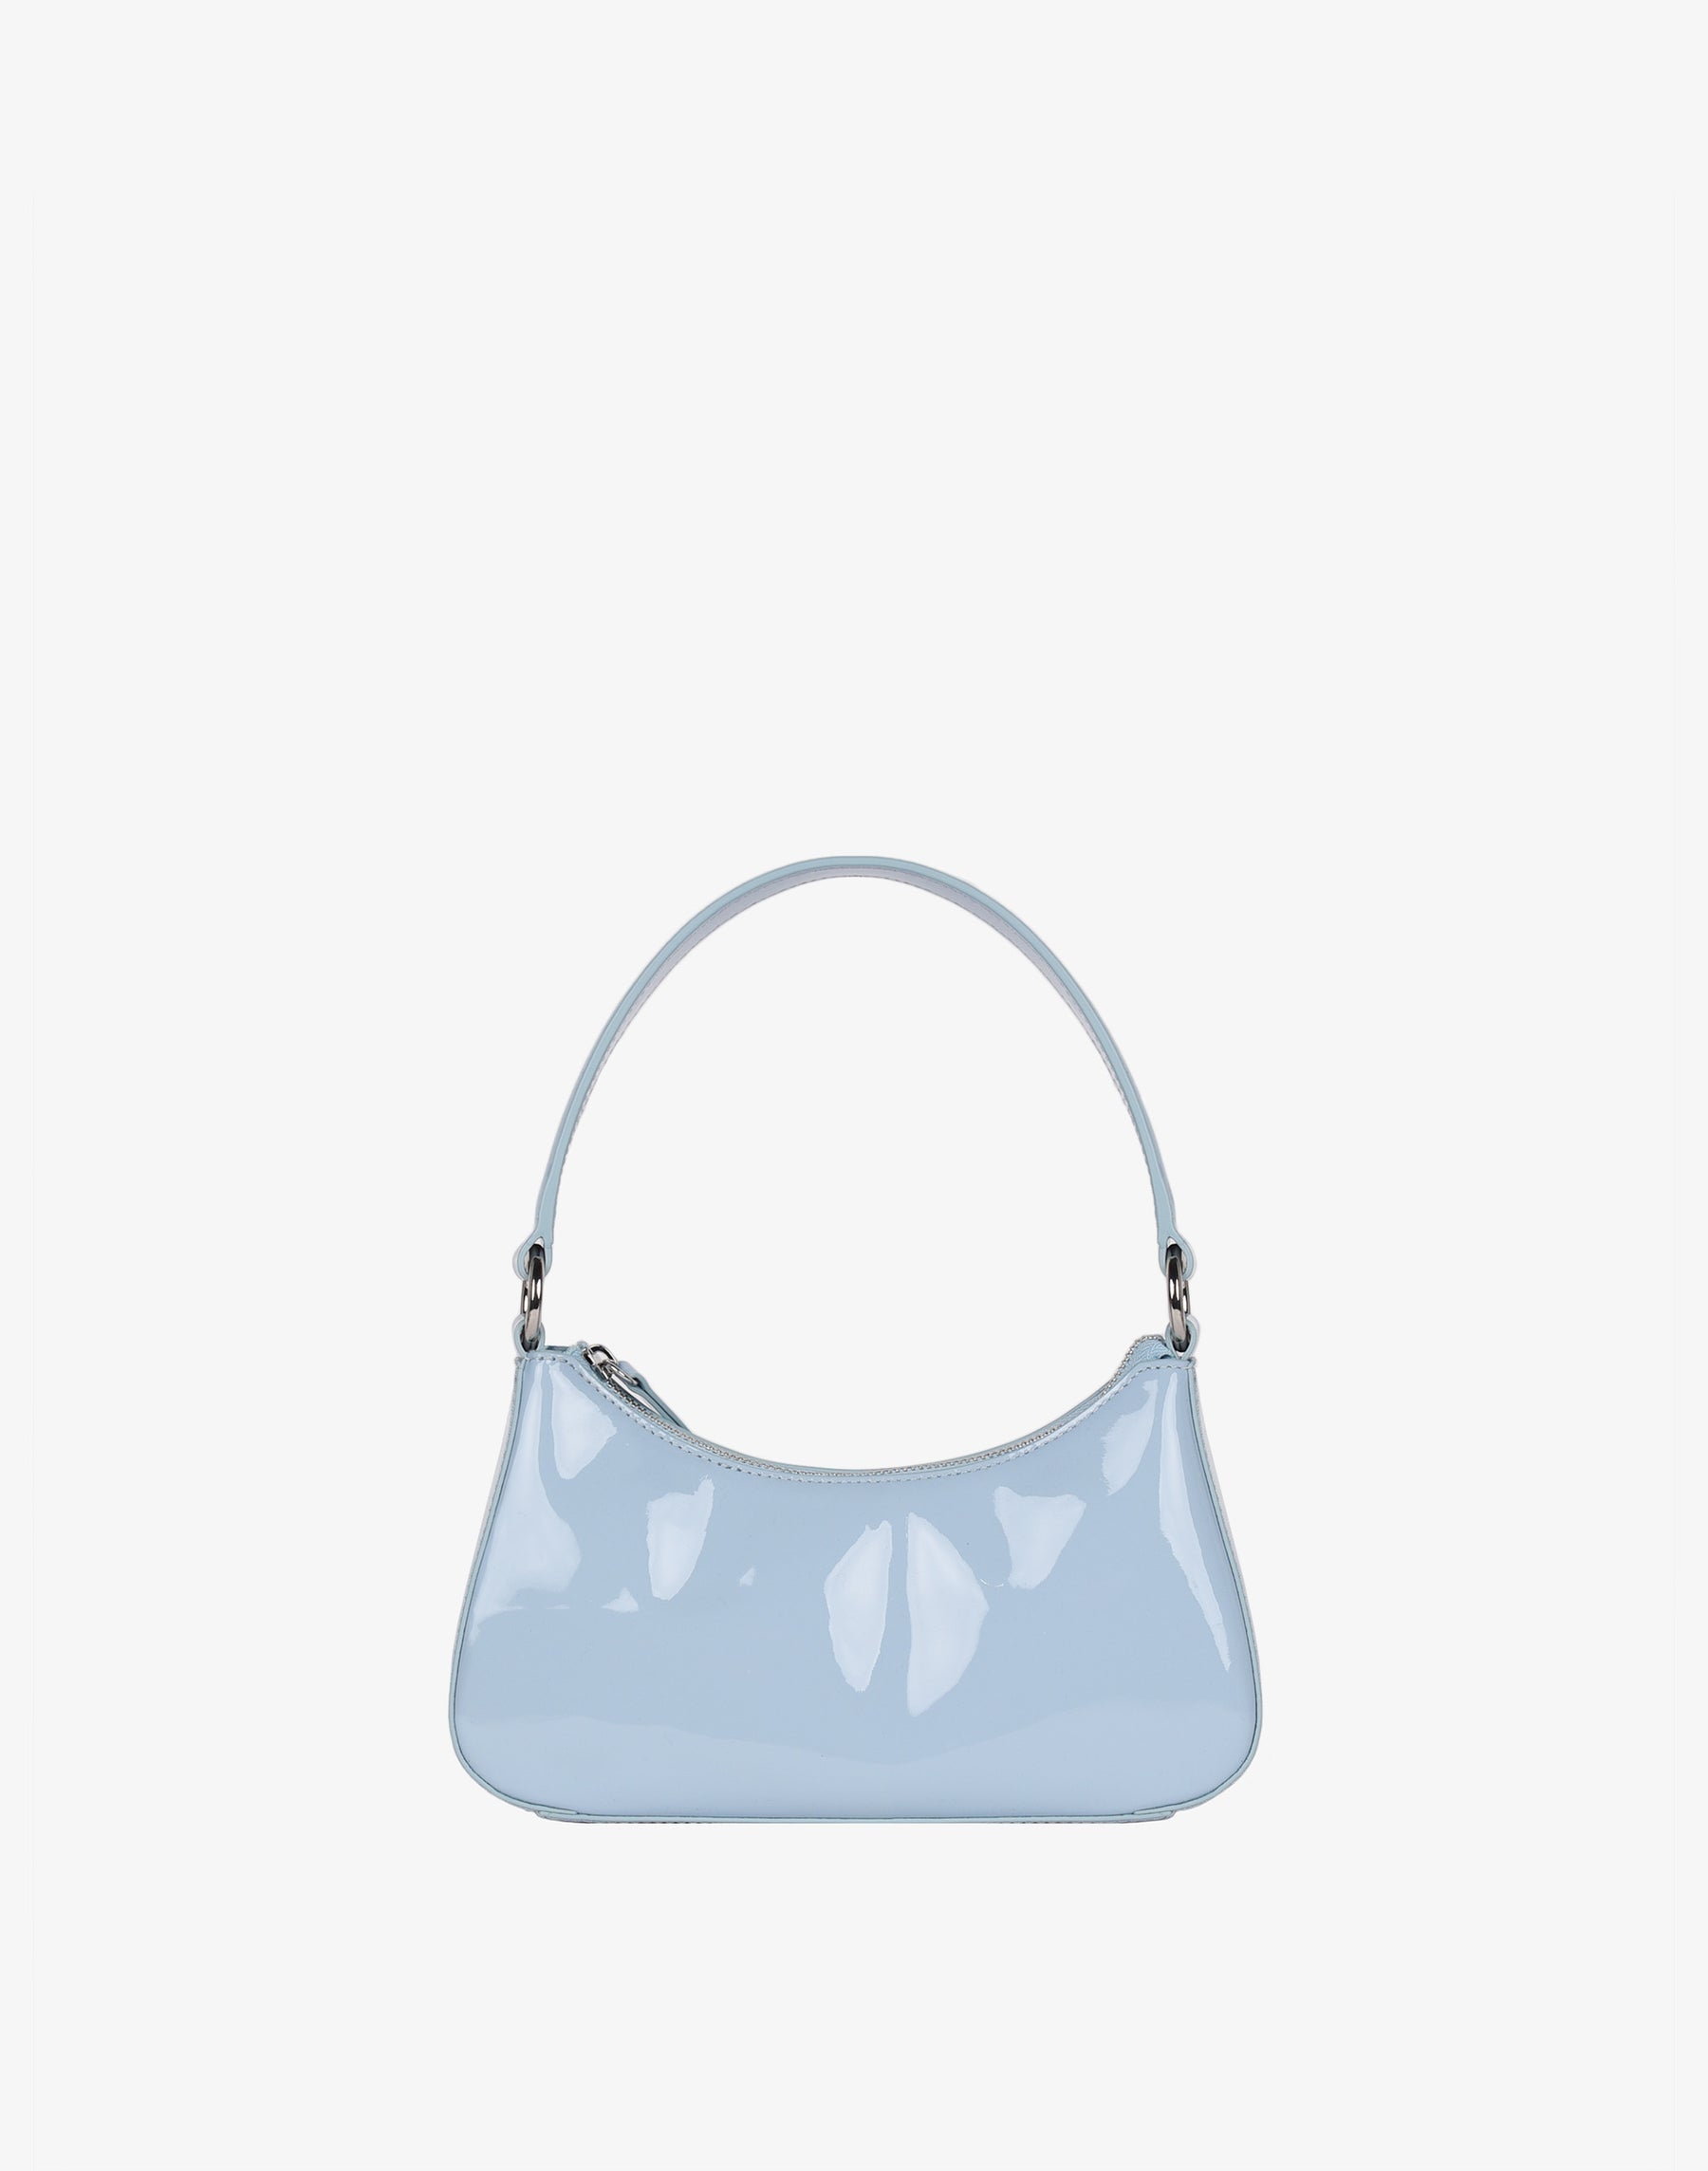 Luxe Mini Shoulder Bag - Sky Blue Patent